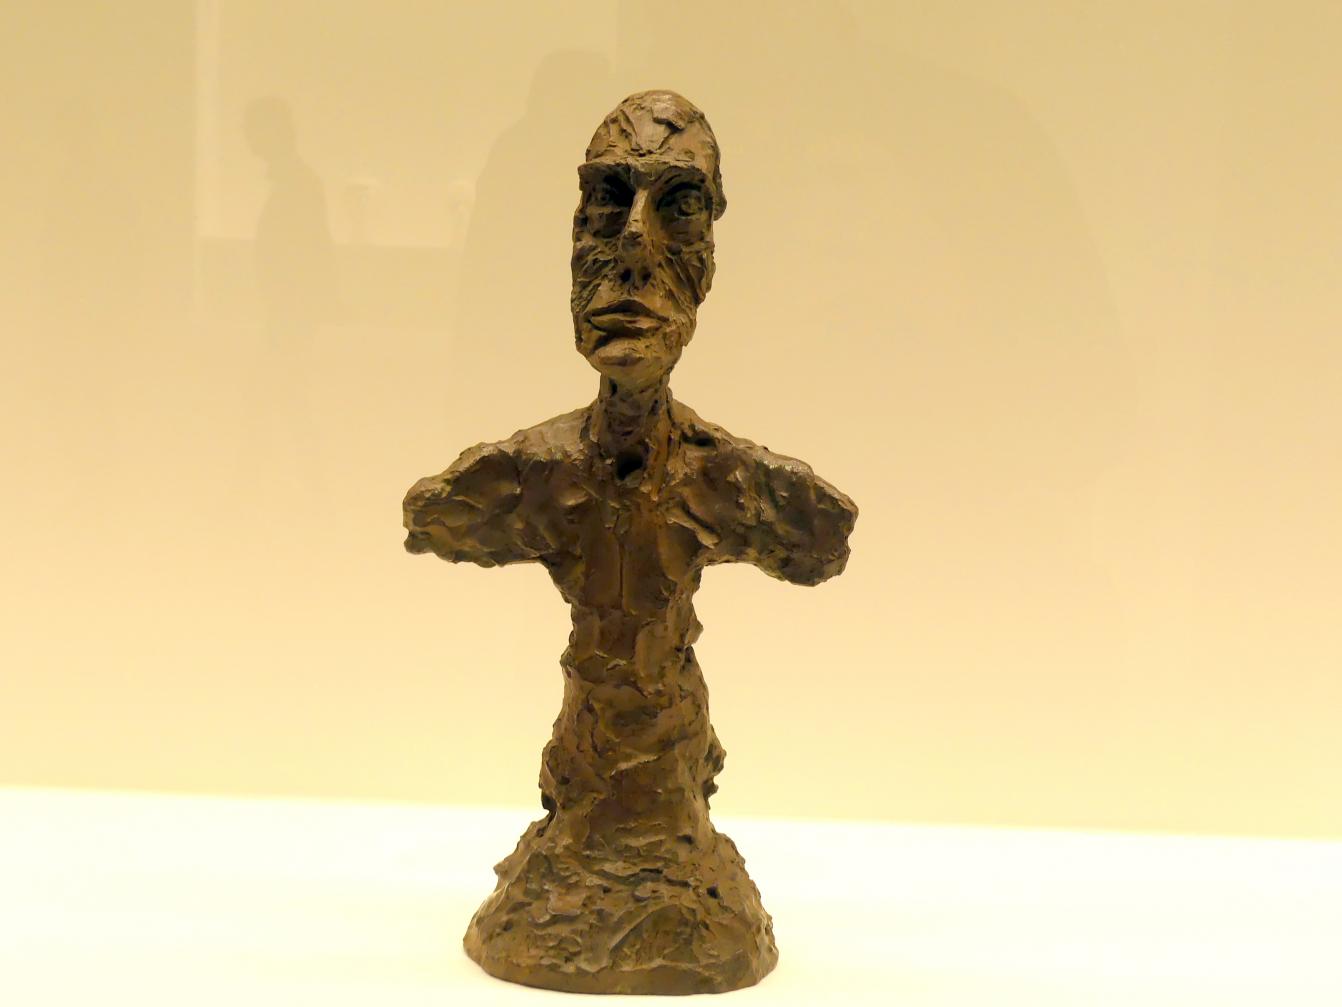 Alberto Giacometti (1914–1965), Büste eines Mannes ("New York I"), Prag, Nationalgalerie im Messepalast, Ausstellung "Alberto Giacometti" vom 18.07.-01.12.2019, Kleine Skulpturen, 1965